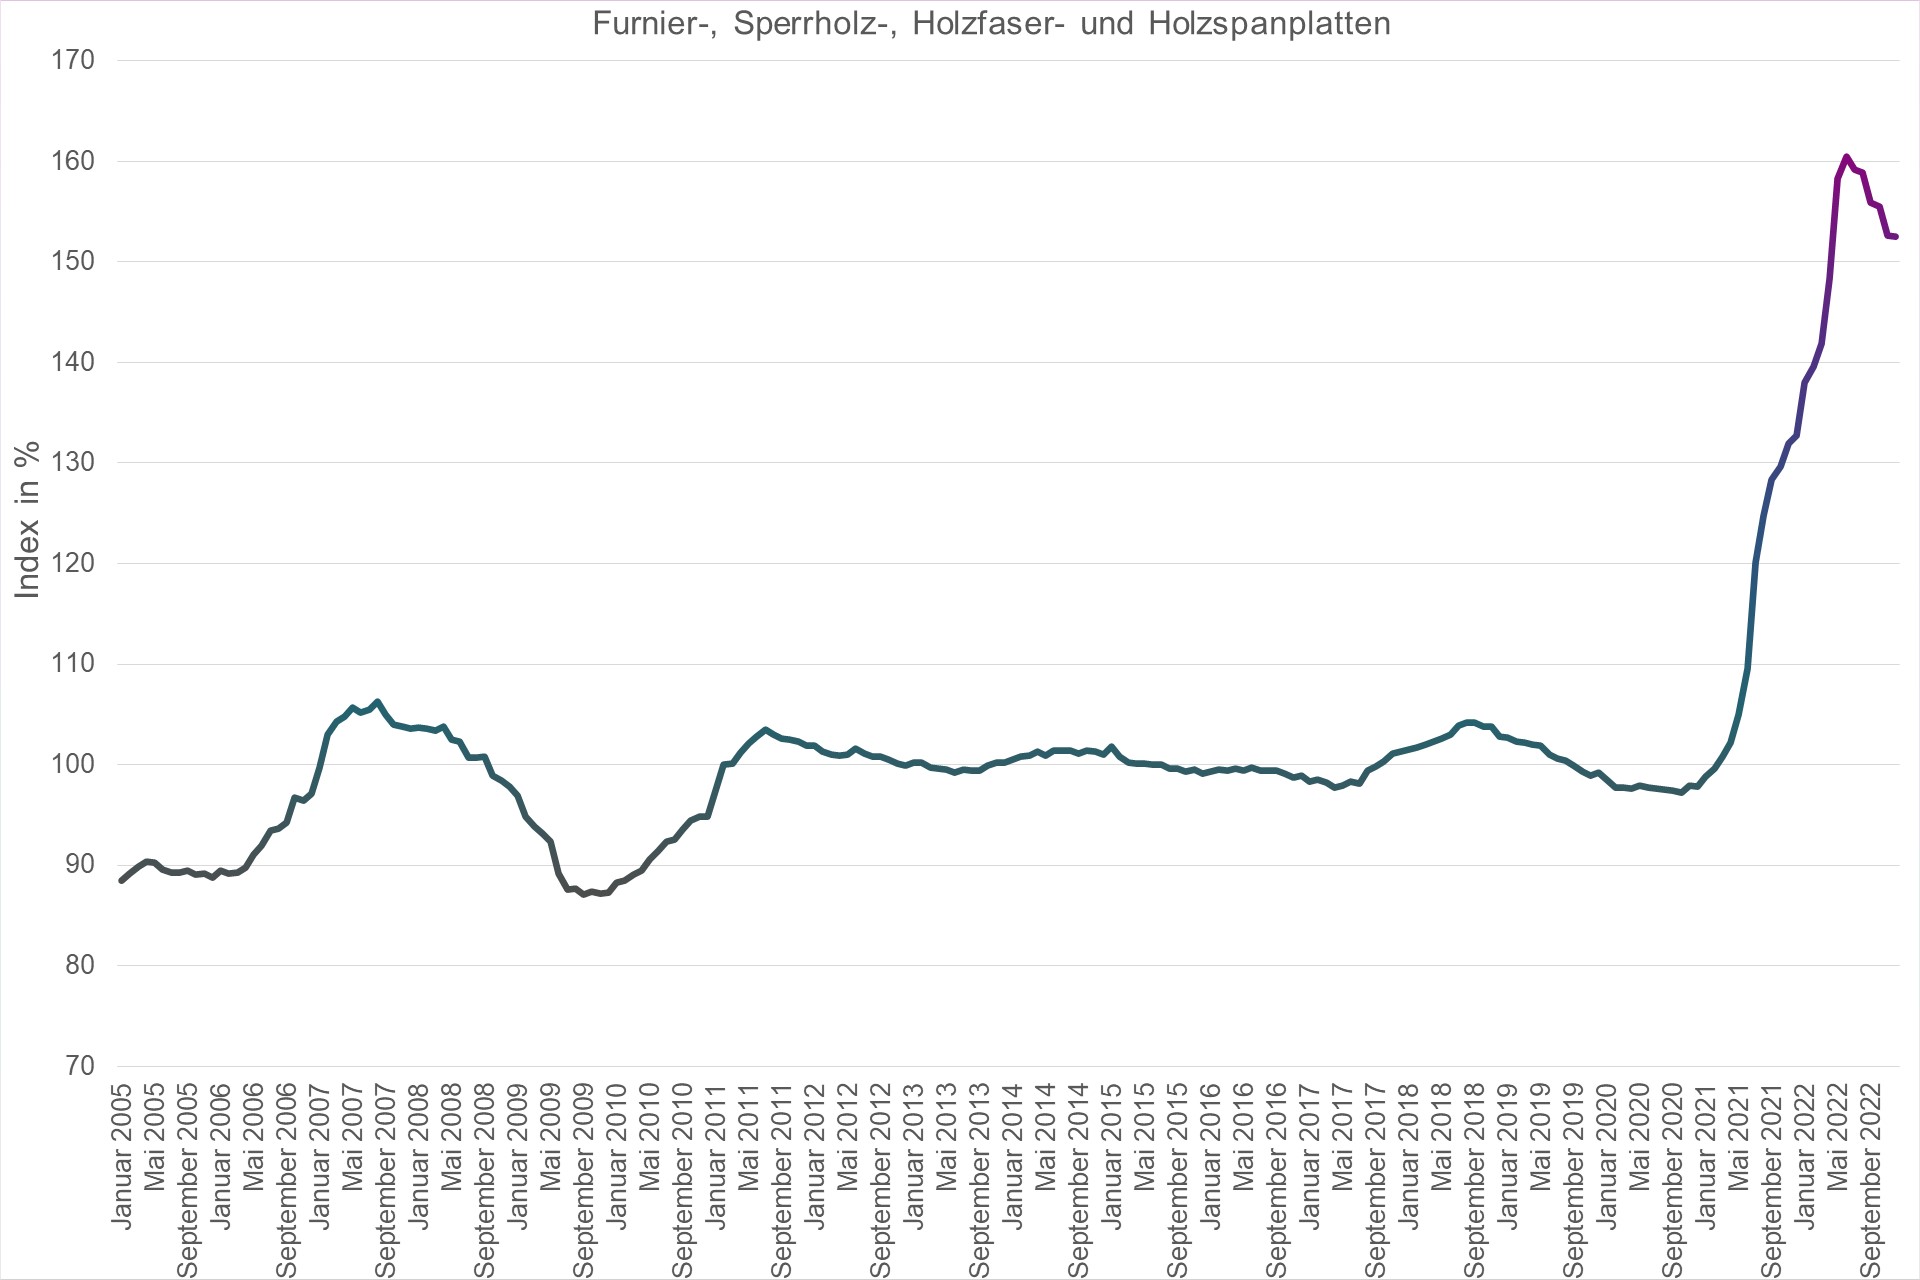 Grafik Preisindex Furnier-, Sperrholz-, Holzfaser- und Holzspanplatten